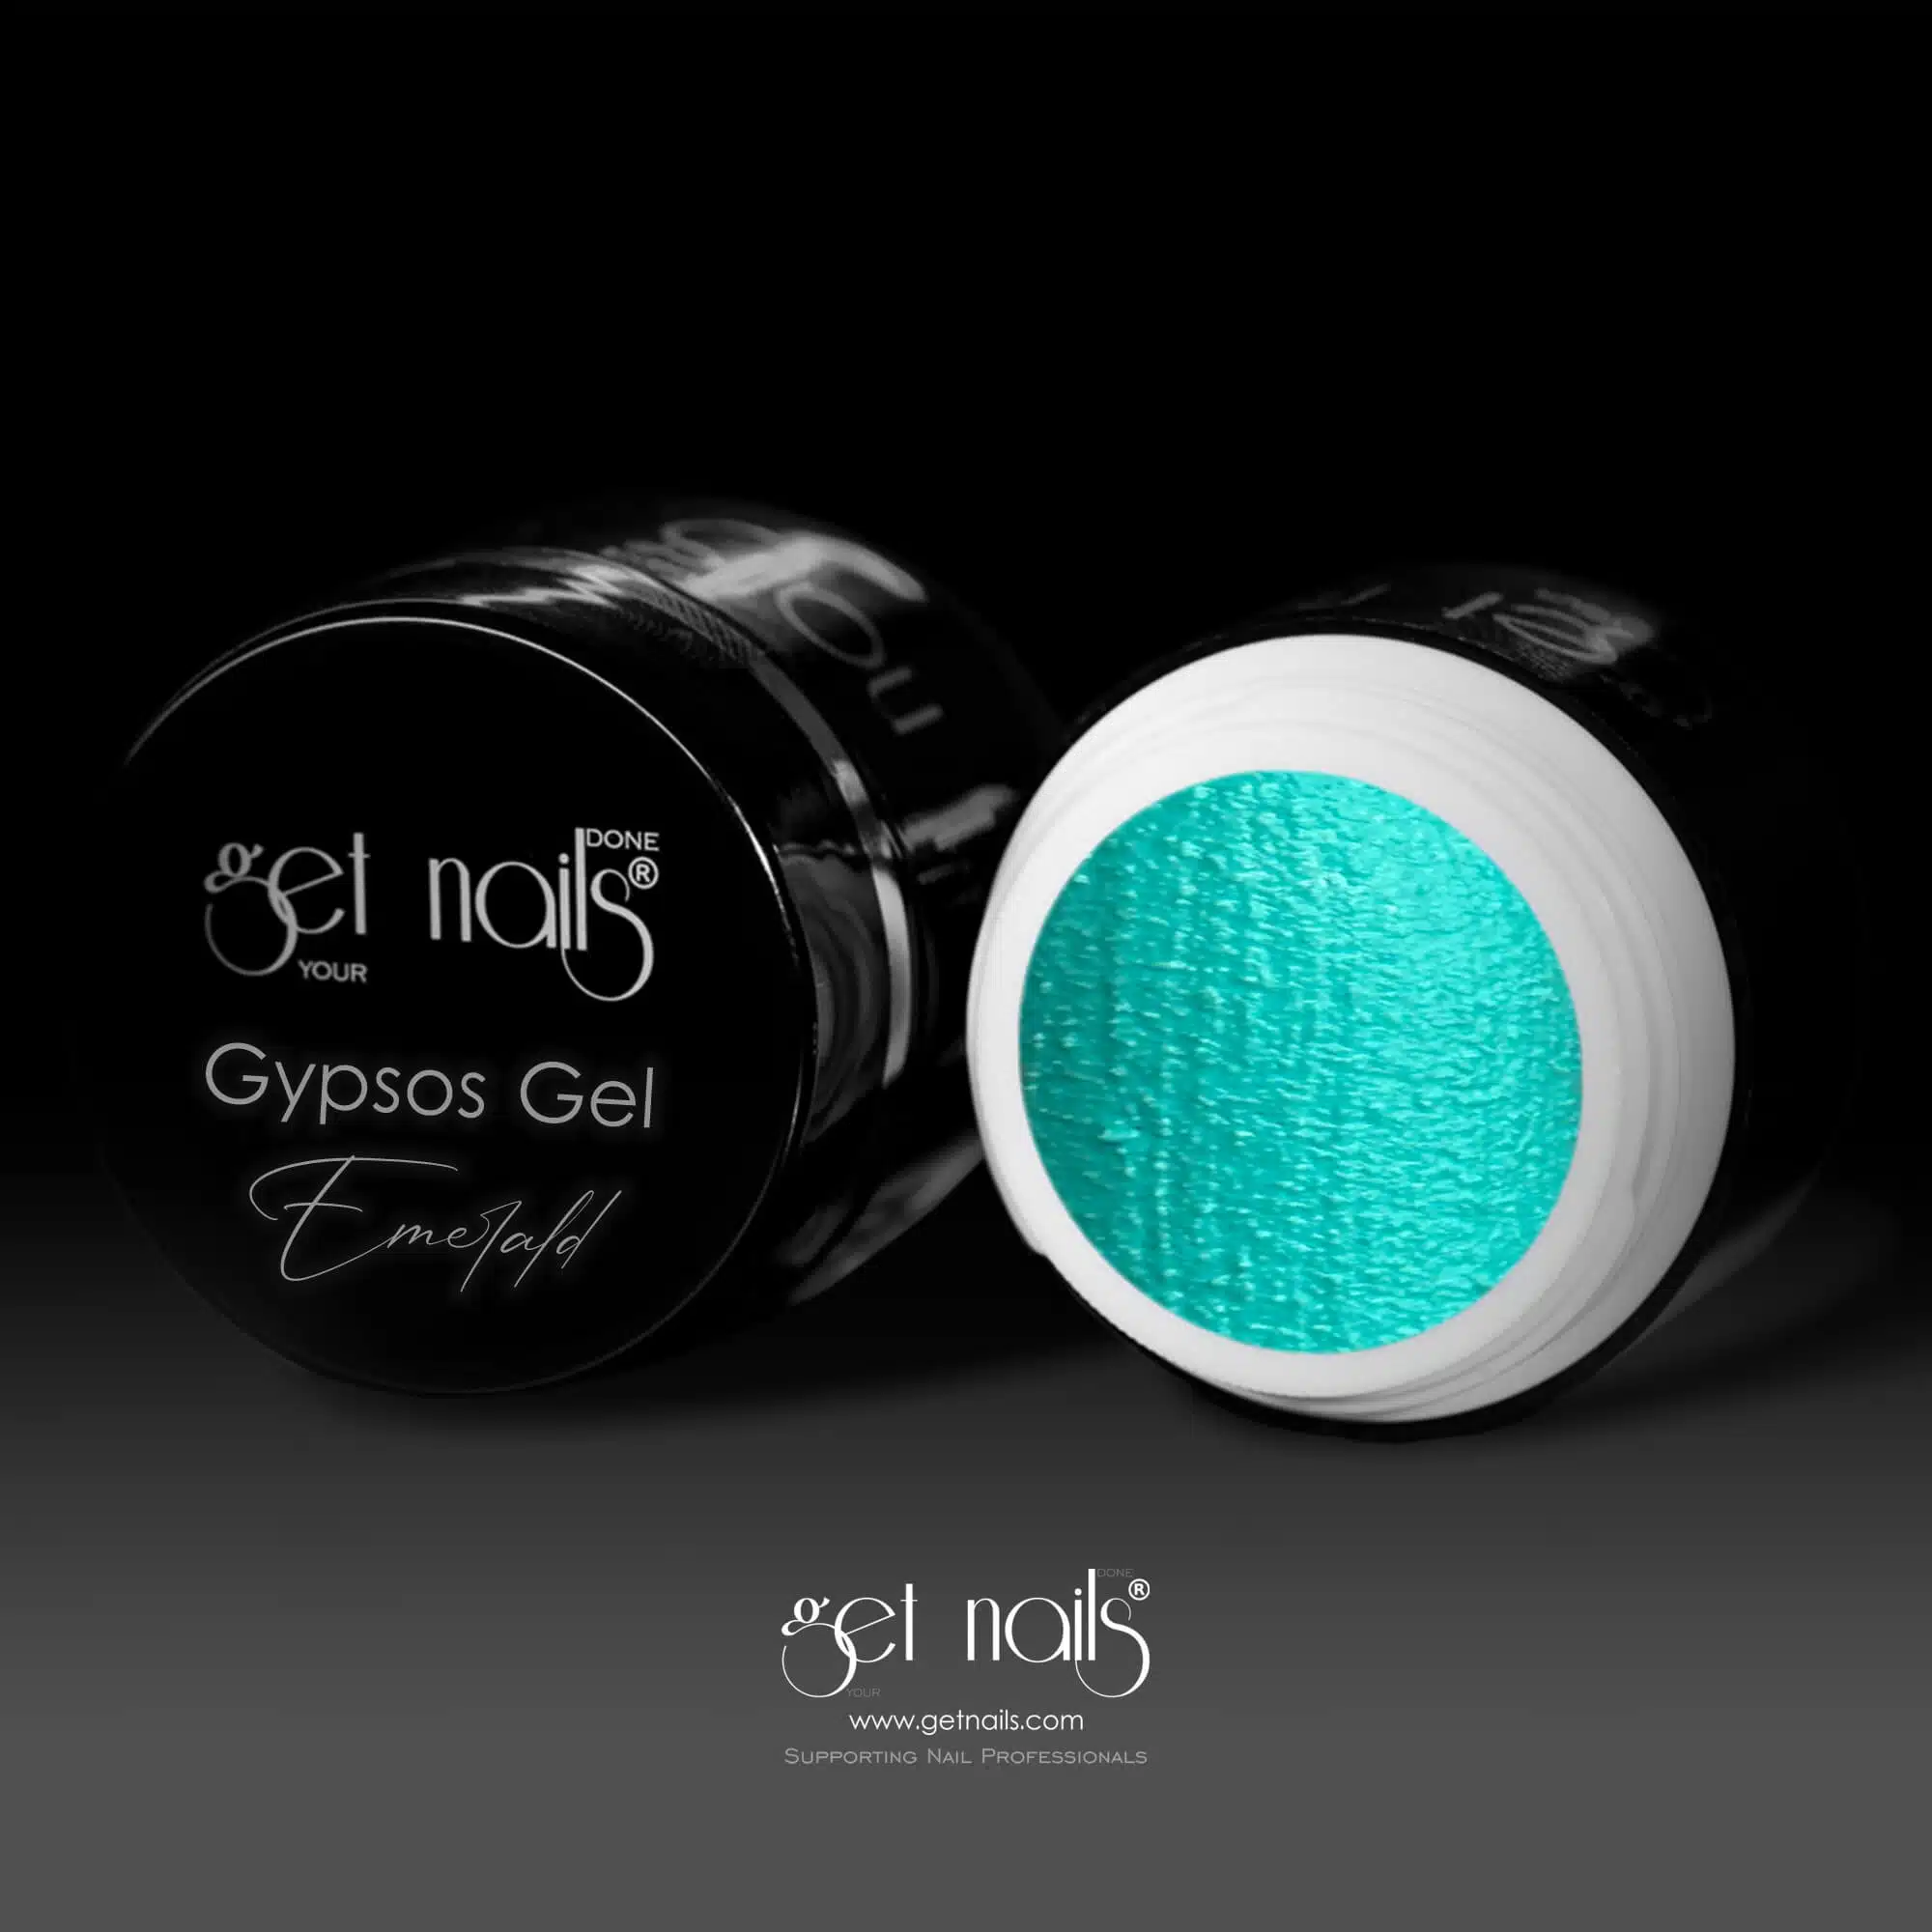 Get Nails Austria - Gypsos Gel Emerald 5g